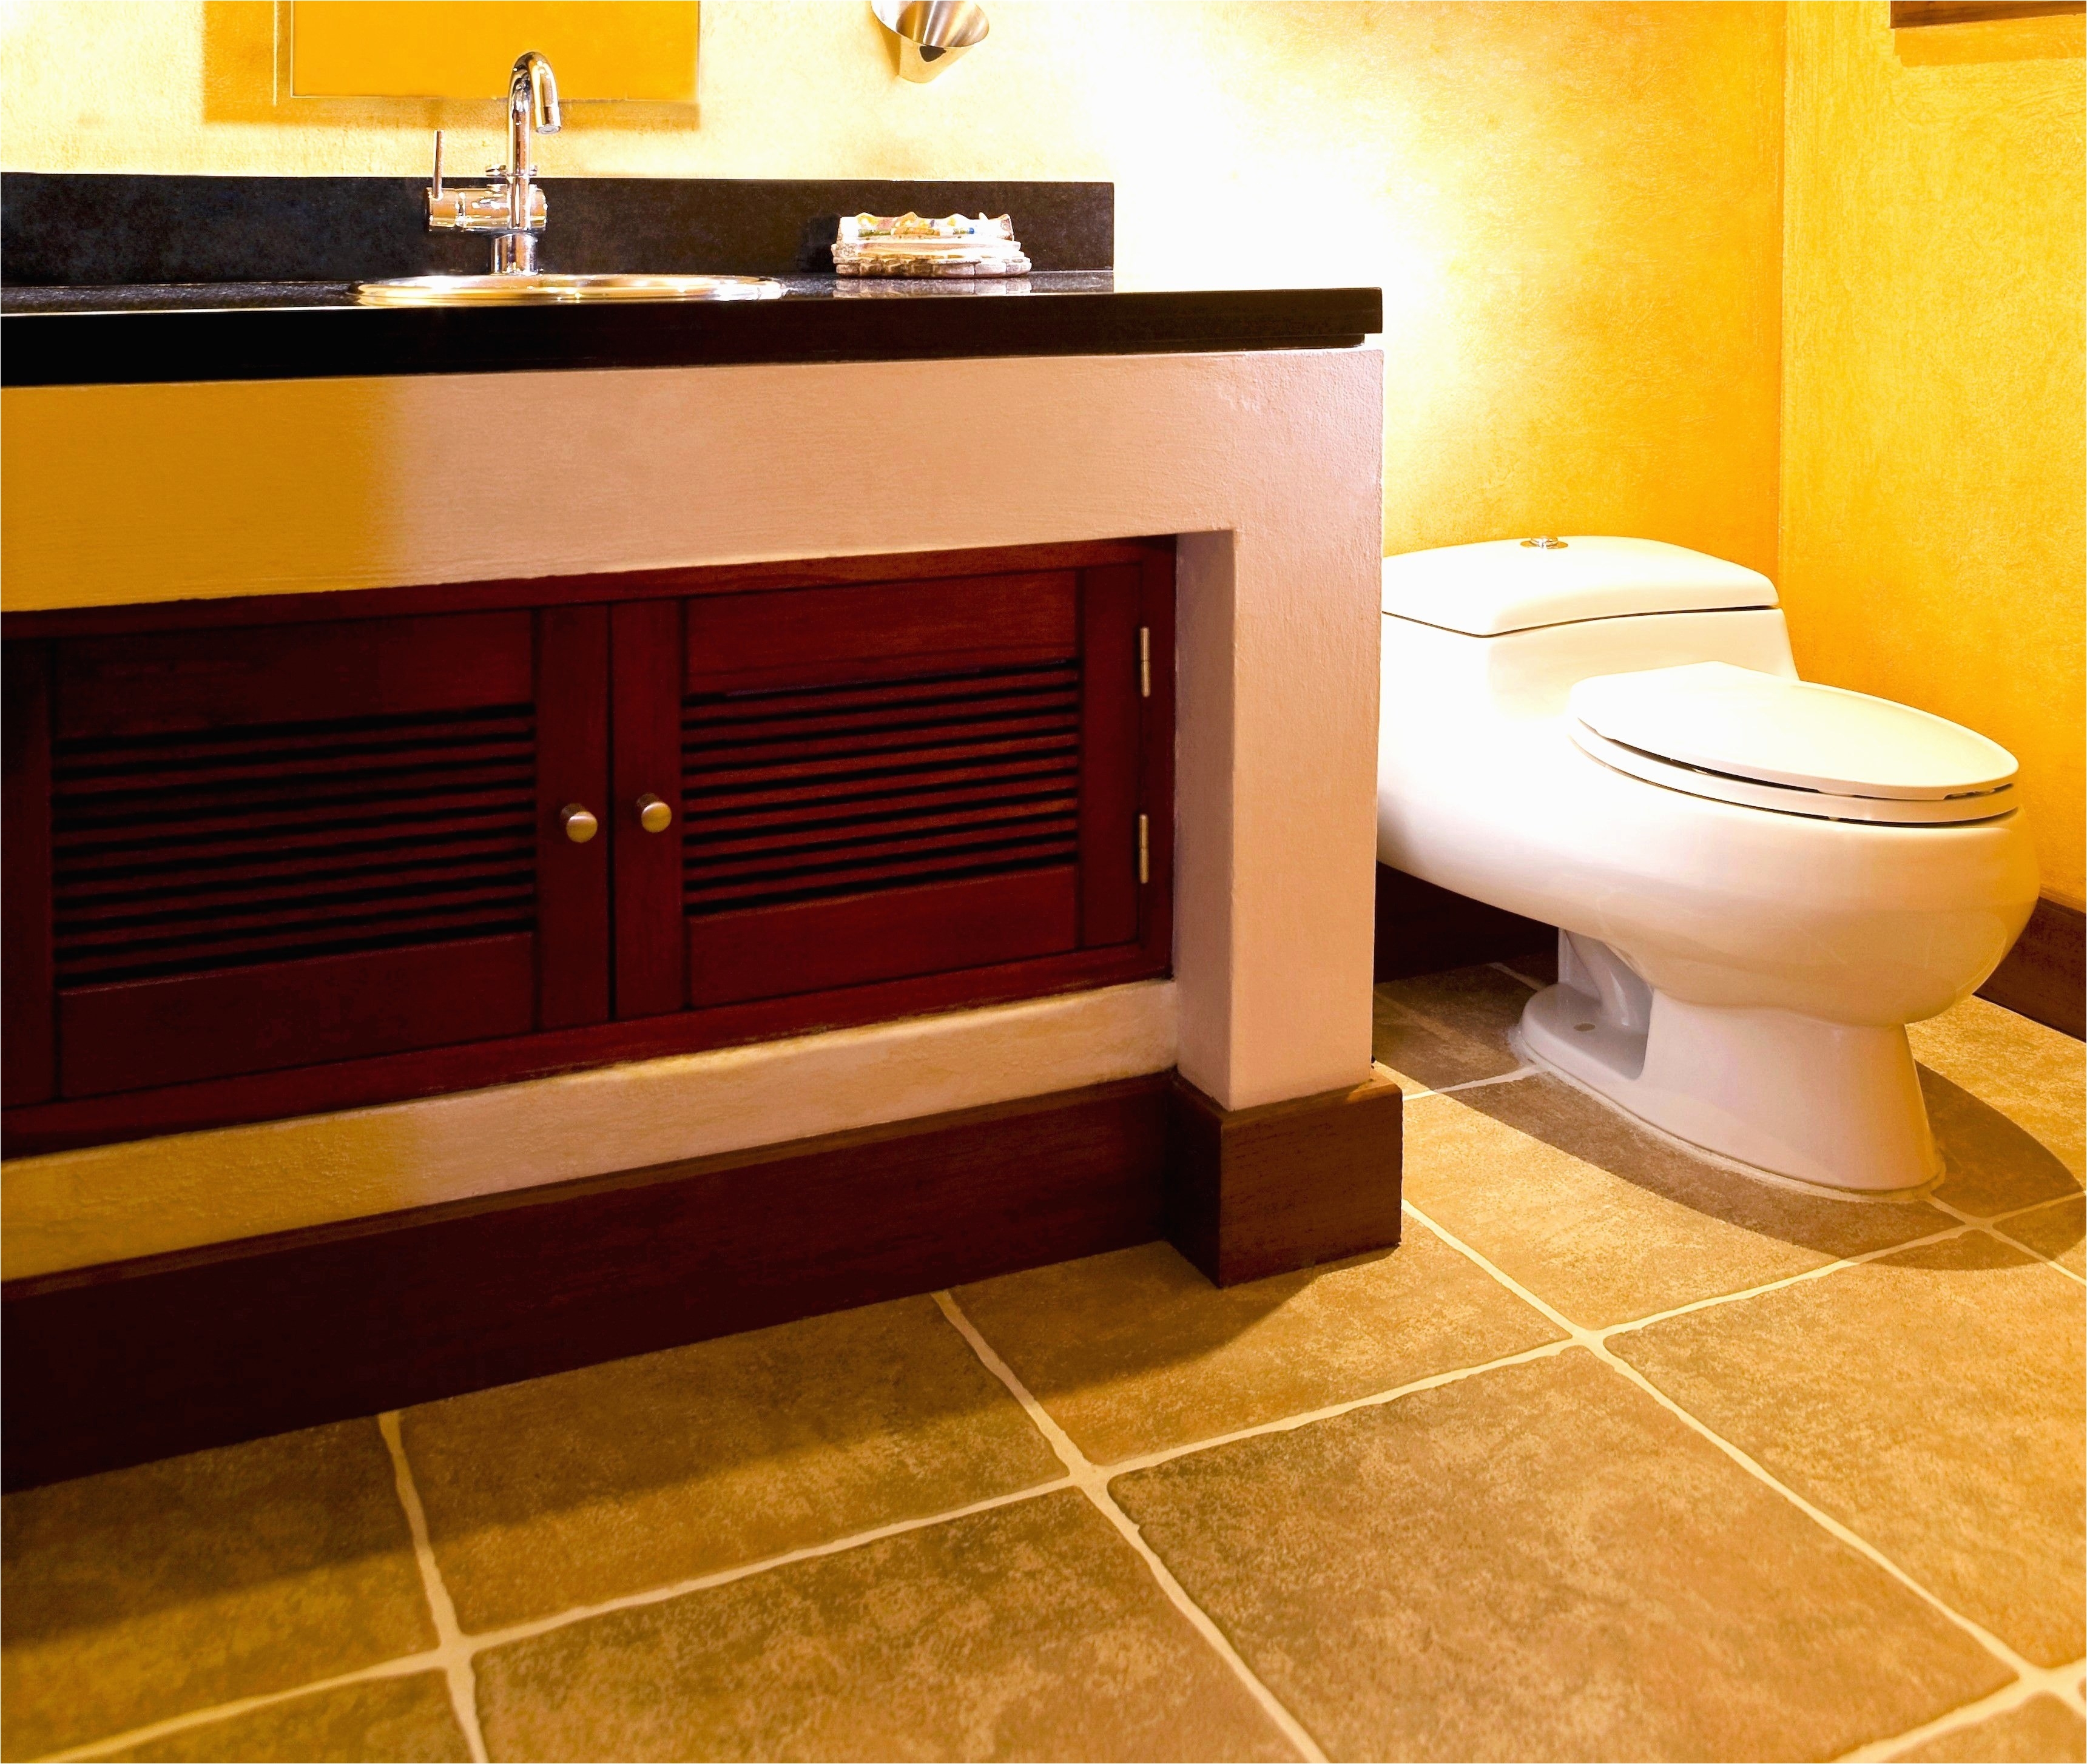 Design Ideas for the Bathroom Very Best Home Decor Tile Best Floor Tiles Mosaic Bathroom 0d New